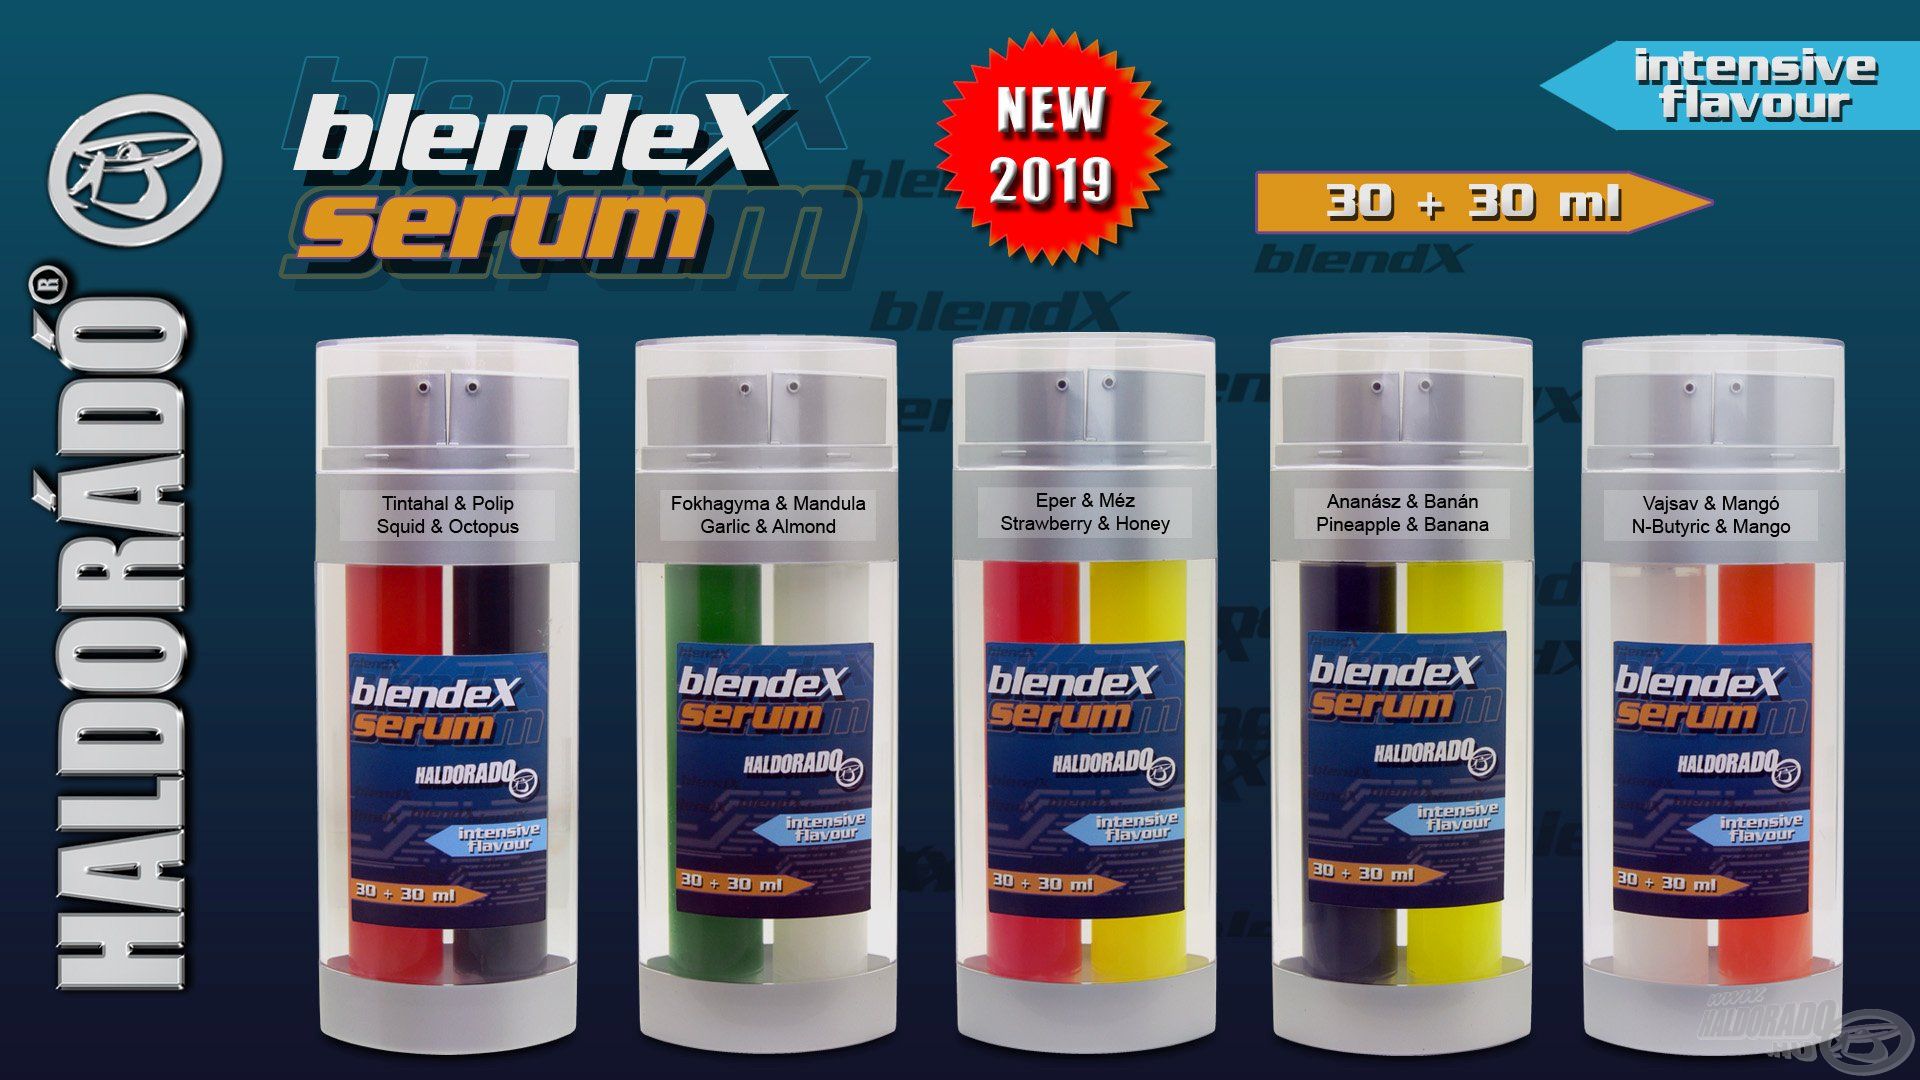 Ti kértétek, mi pedig elkészítettük! Íme, a BlendeX csalik mellett található tömény aromakoncentrátum továbbfejlesztett változata, a BlendeX Serum!